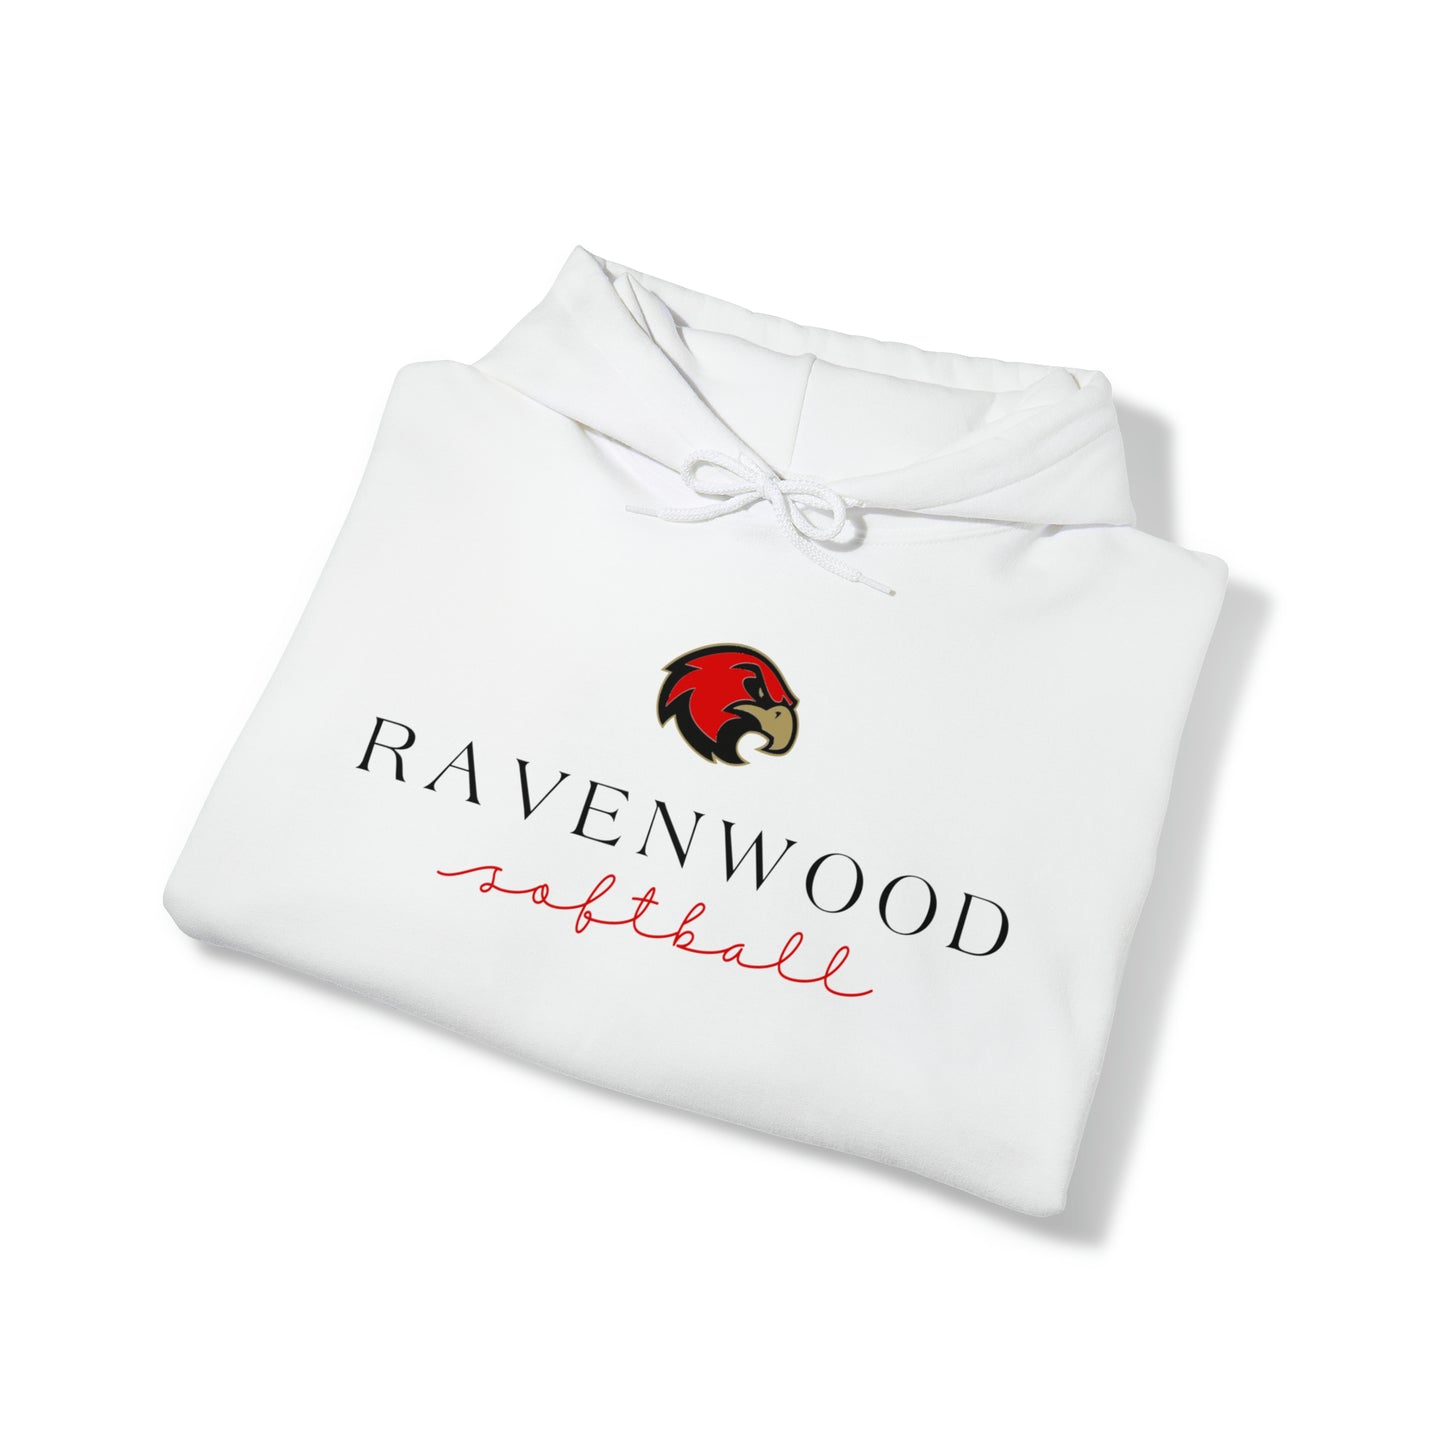 Ravenwood Softball Cursive Hoodie